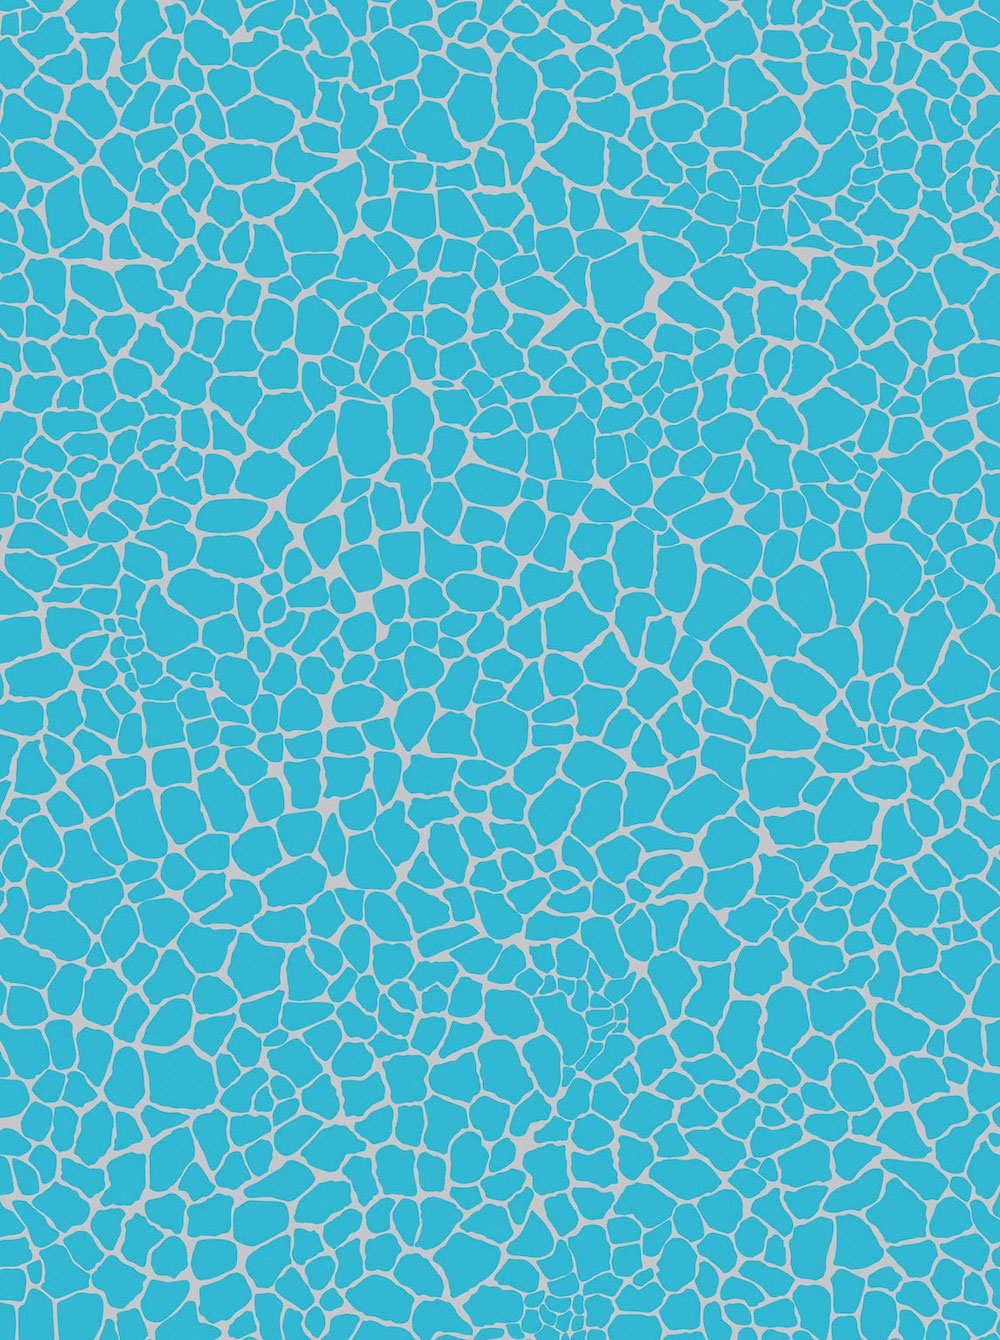 Décopatch-Papier 537 Mosaik blau/silber , 30 x 40 cm